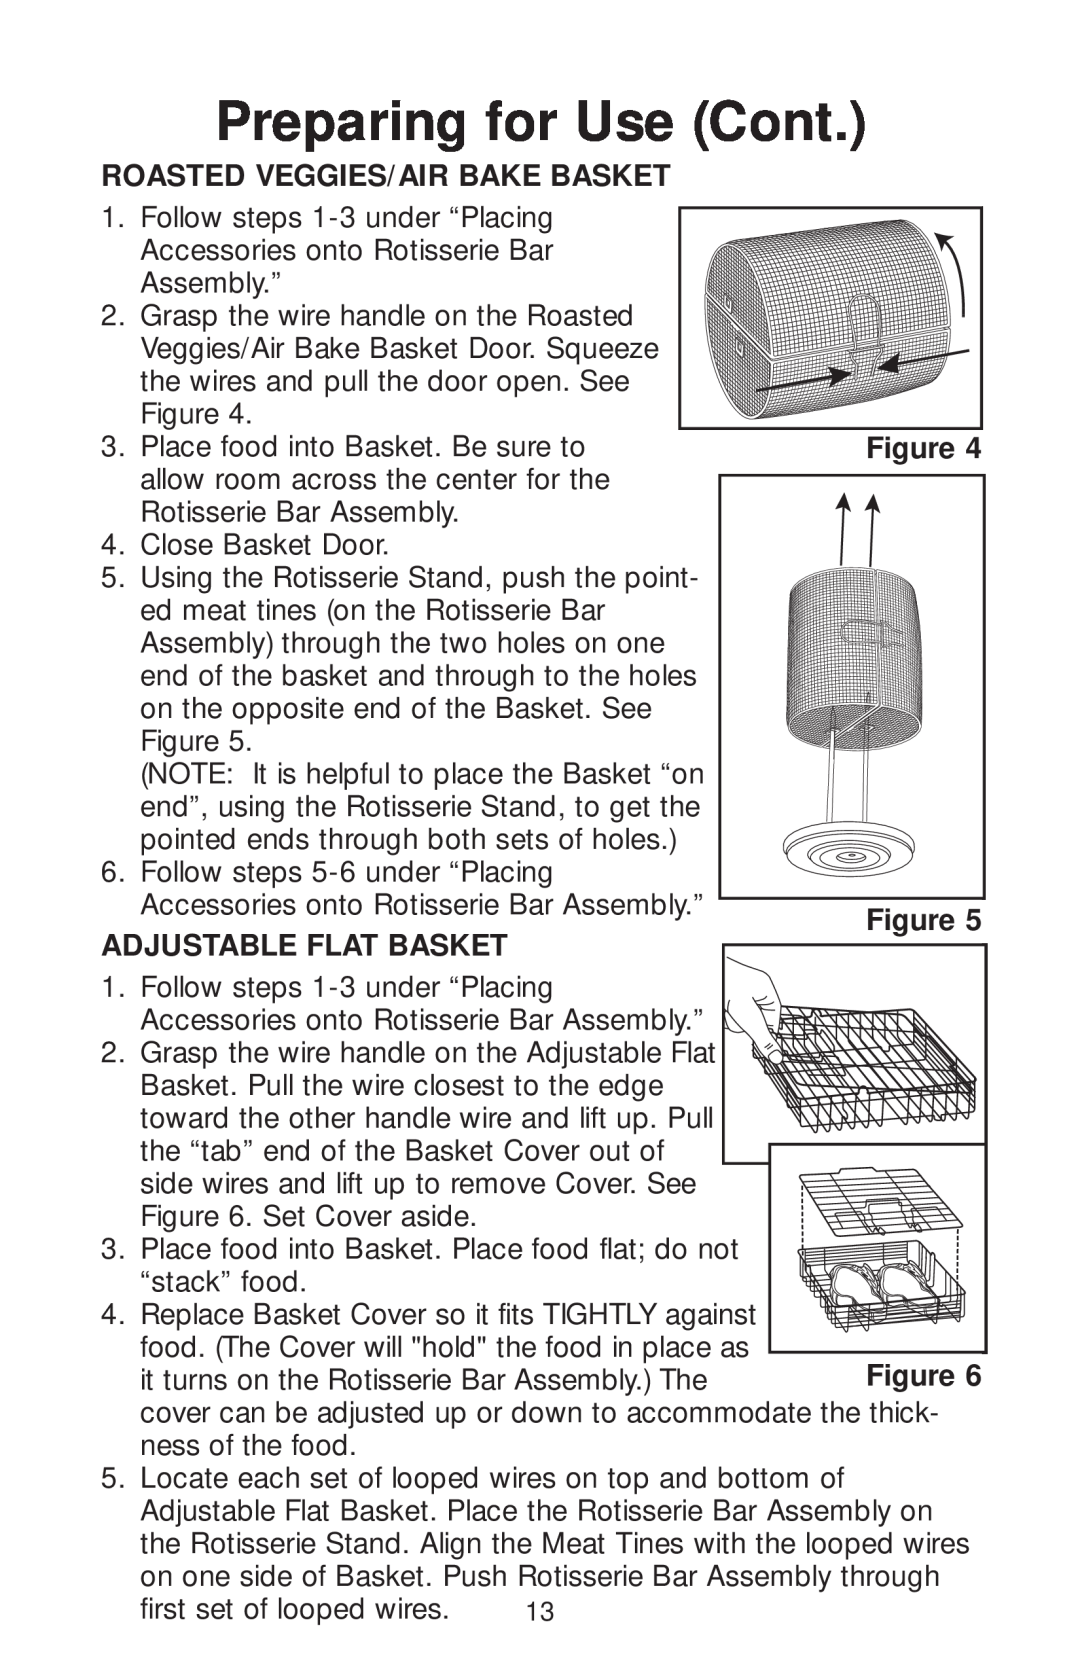 George Foreman GR82 owner manual Roasted Veggies/Air Bake Basket, Adjustable Flat Basket, Preparing for Use Cont 